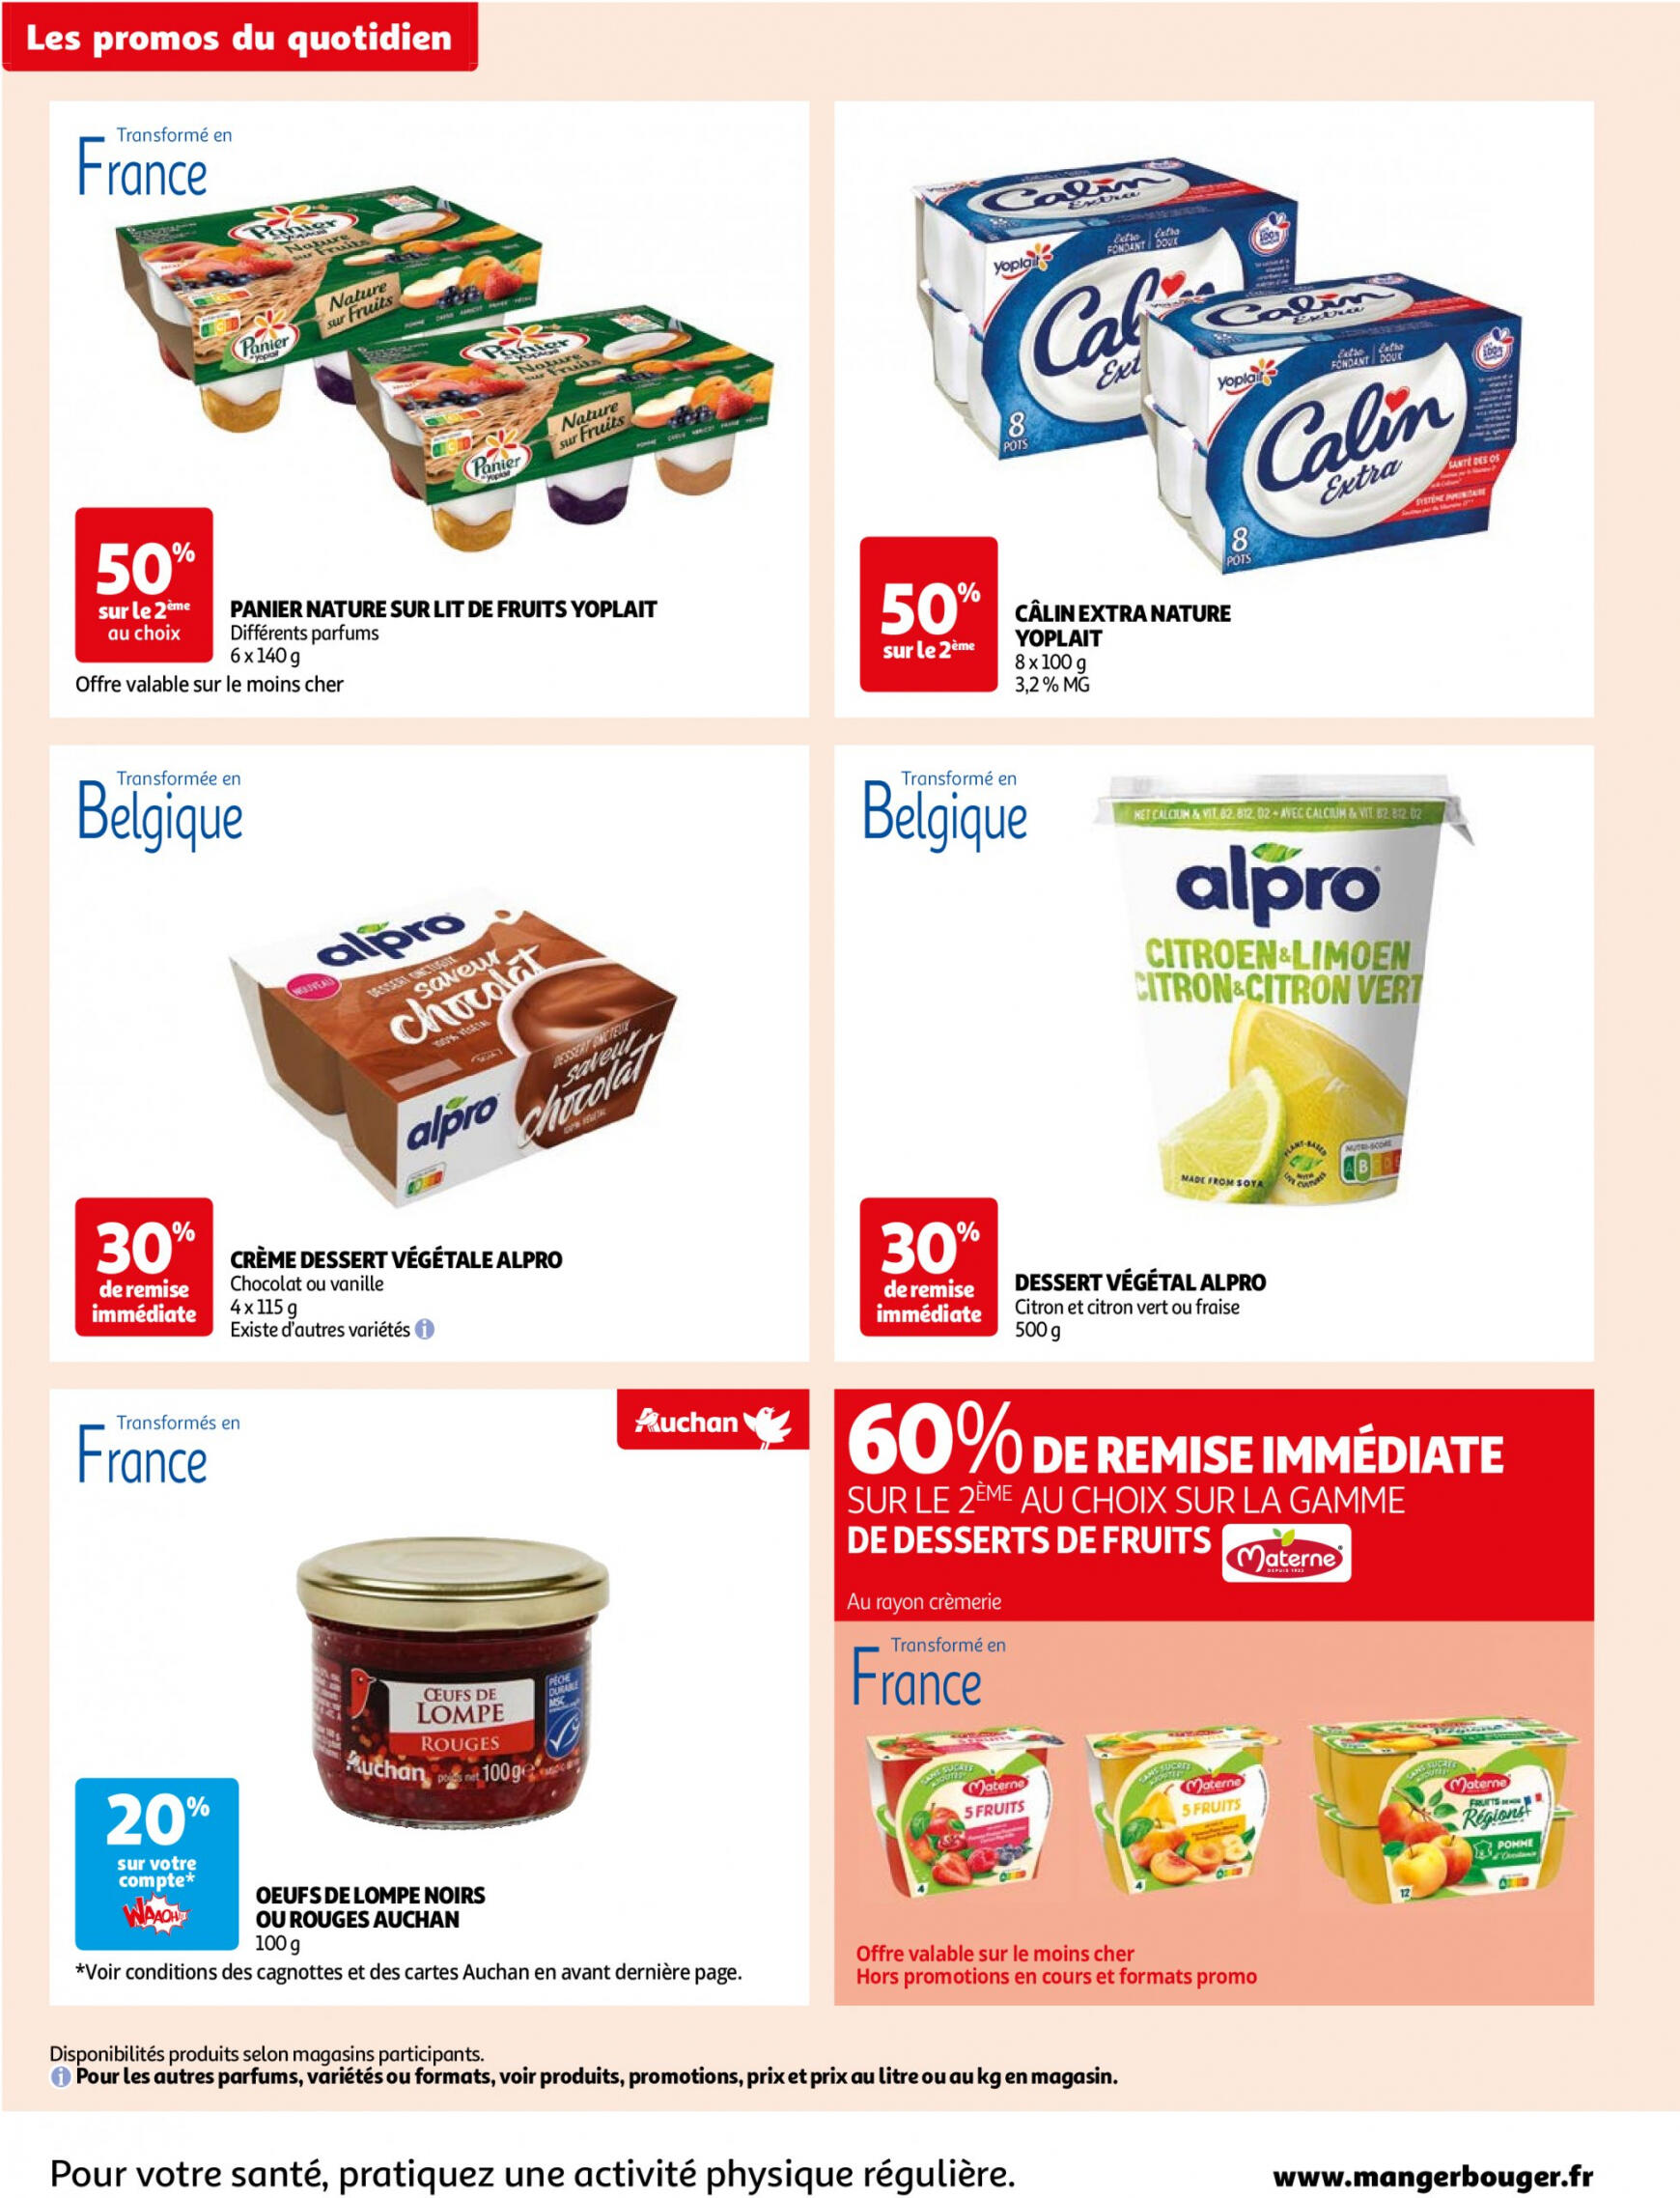 auchan - Auchan - Des économies au quotidien folder huidig 14.05. - 03.06. - page: 4